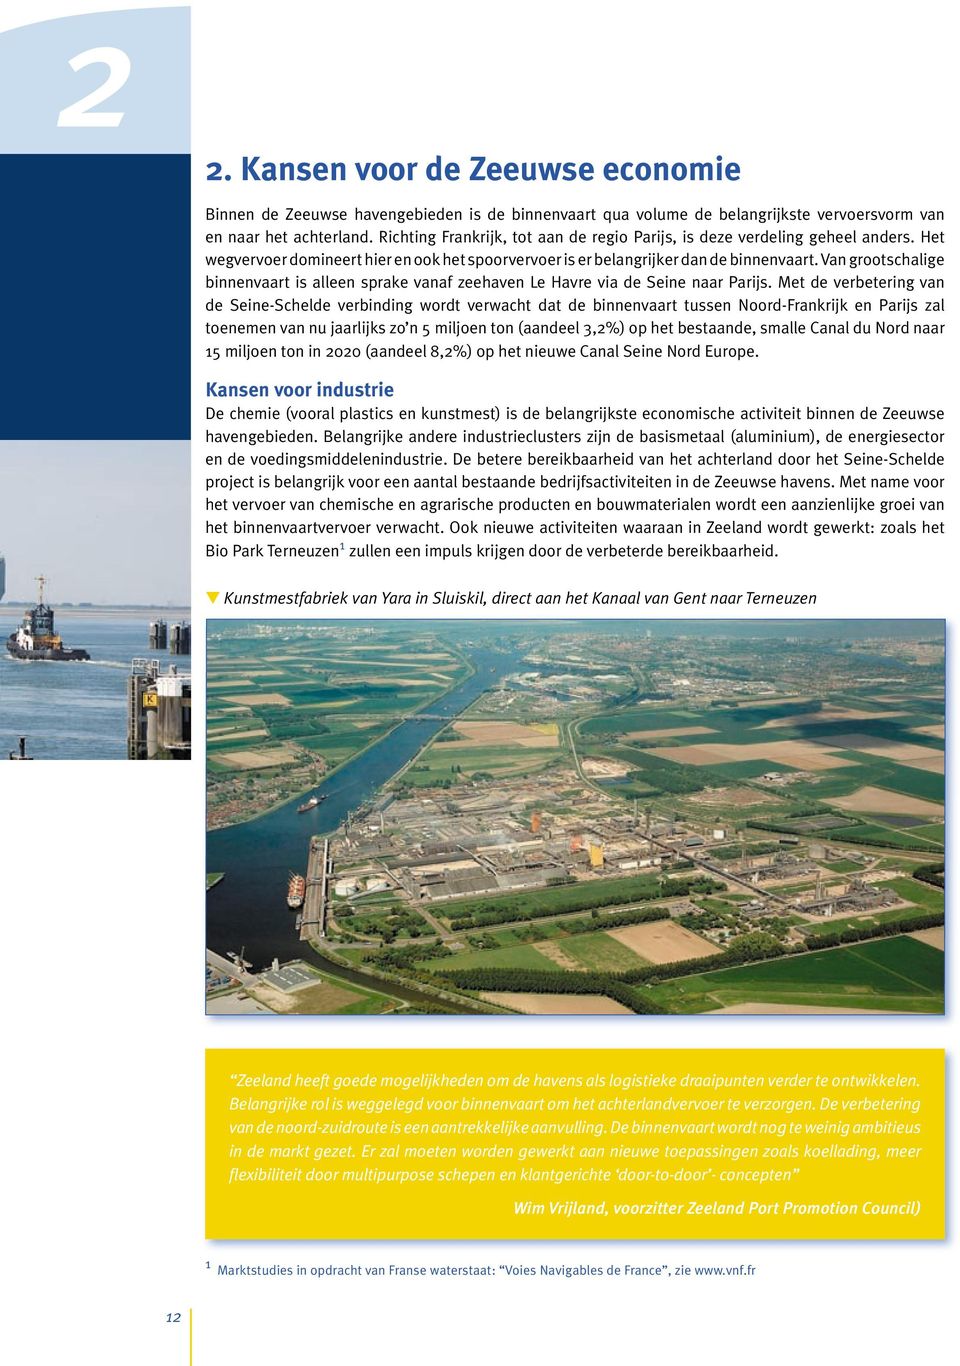 Van grootschalige binnenvaart is alleen sprake vanaf zeehaven Le Havre via de Seine naar Parijs.